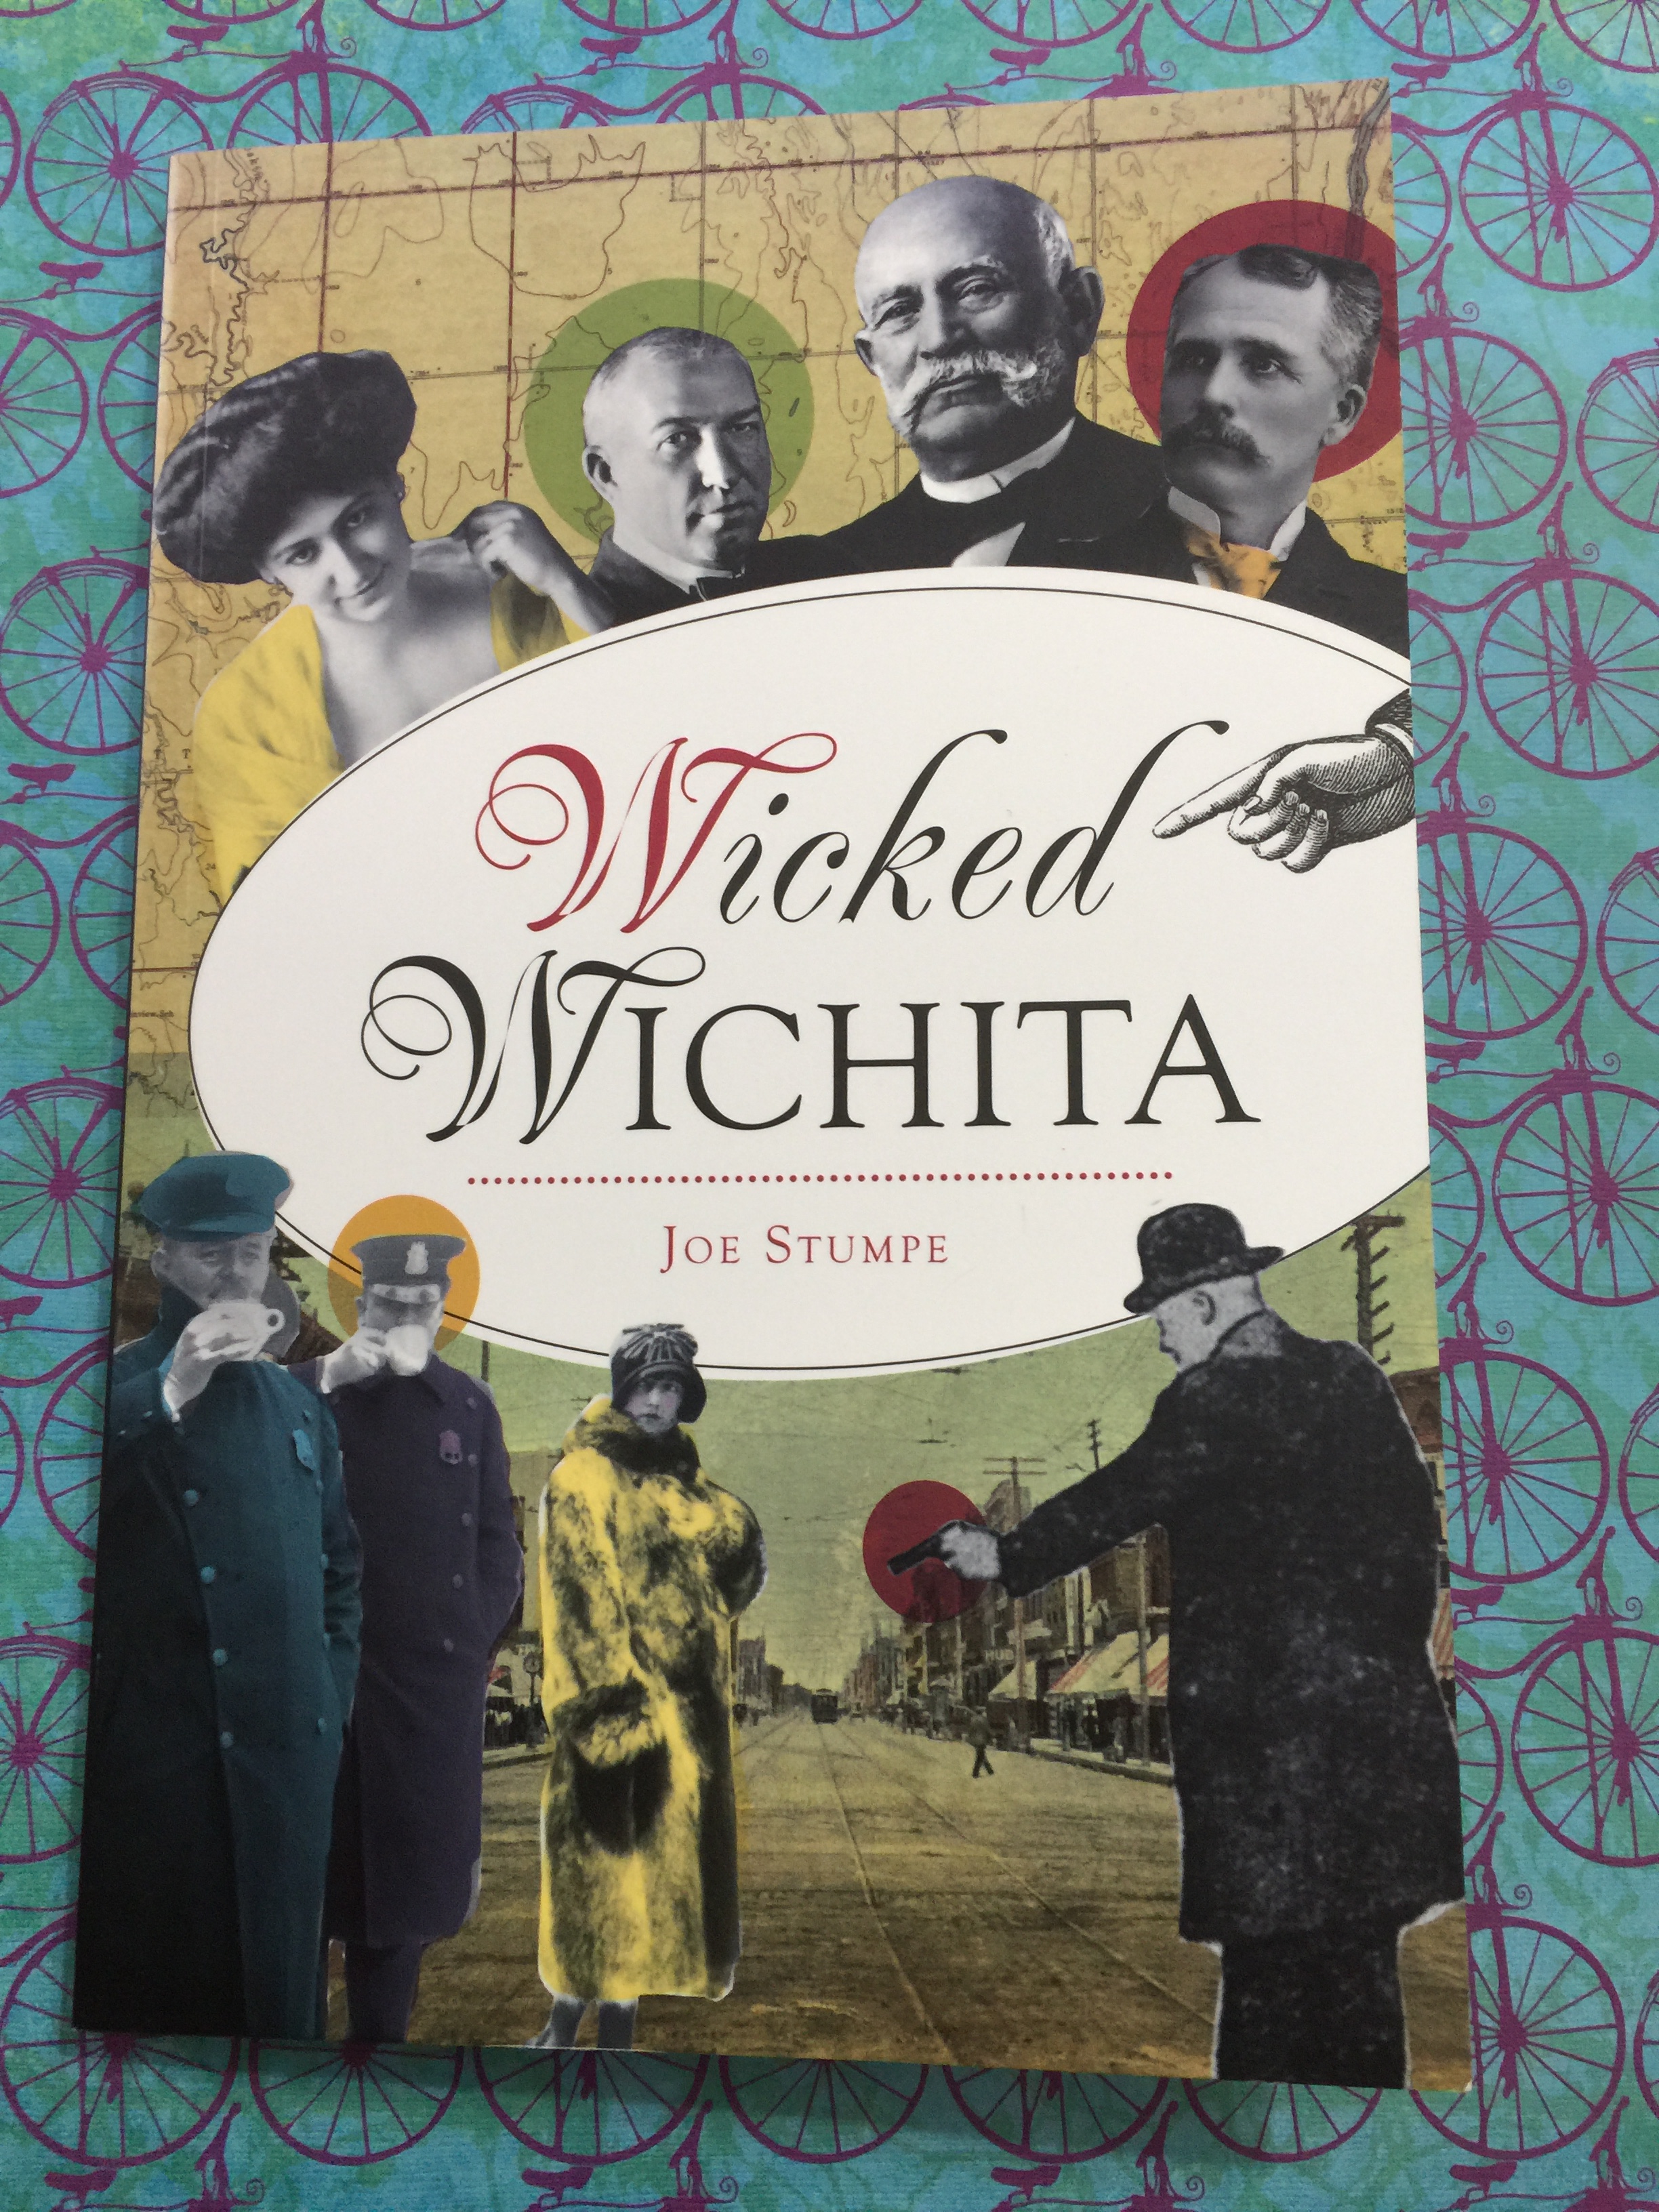 Wicked-Wichita